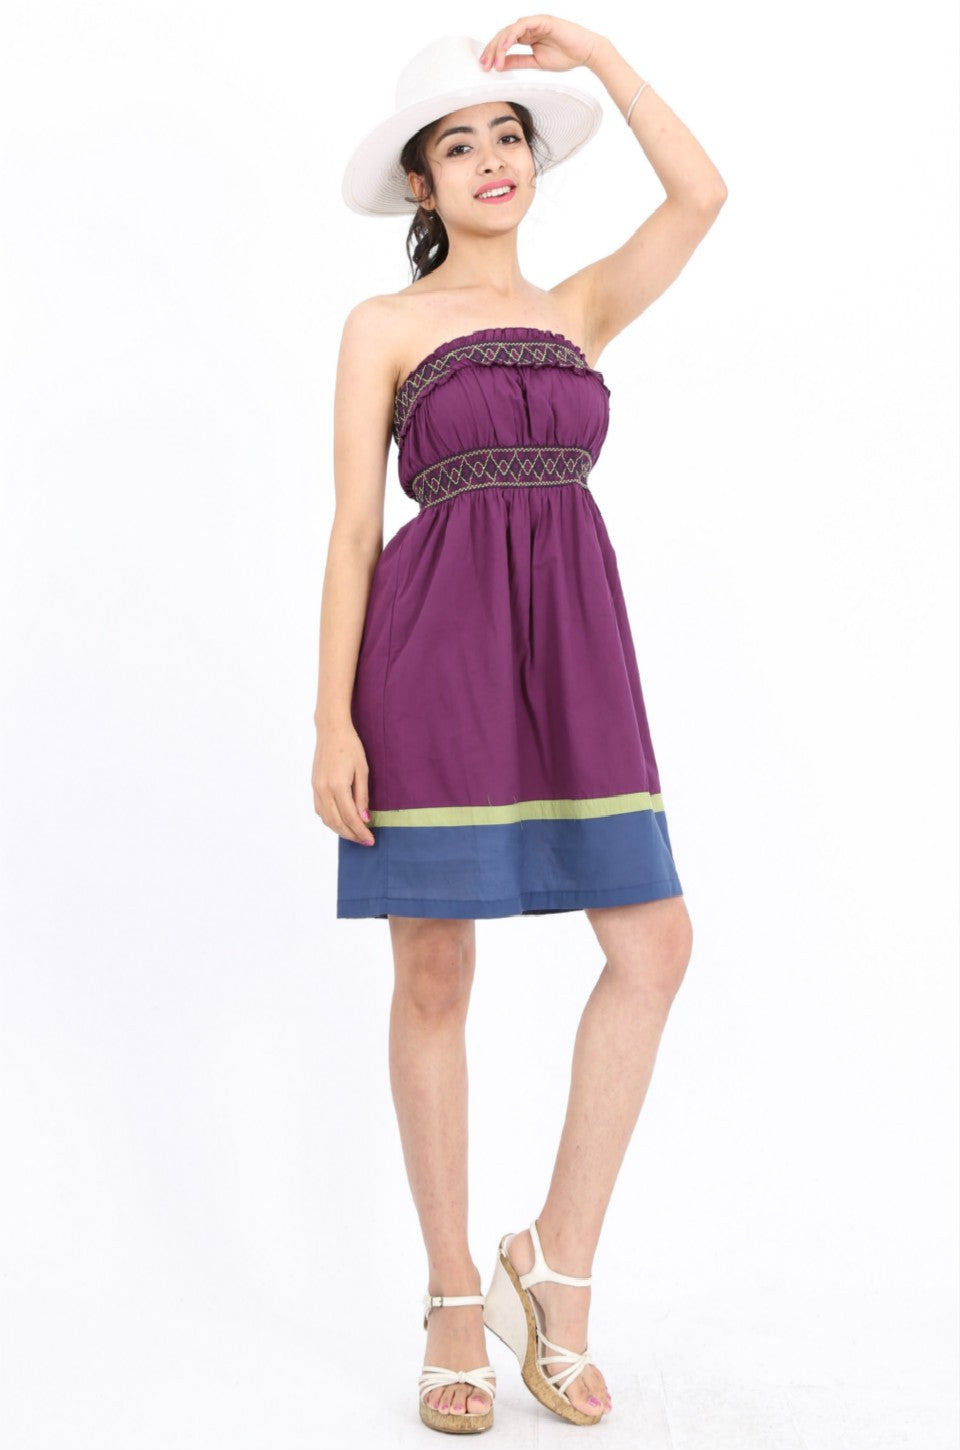 MISS PINKI Stella boob-tube dress in purple Embroidery dress mini dress casual dress summer dress sundress beach dress